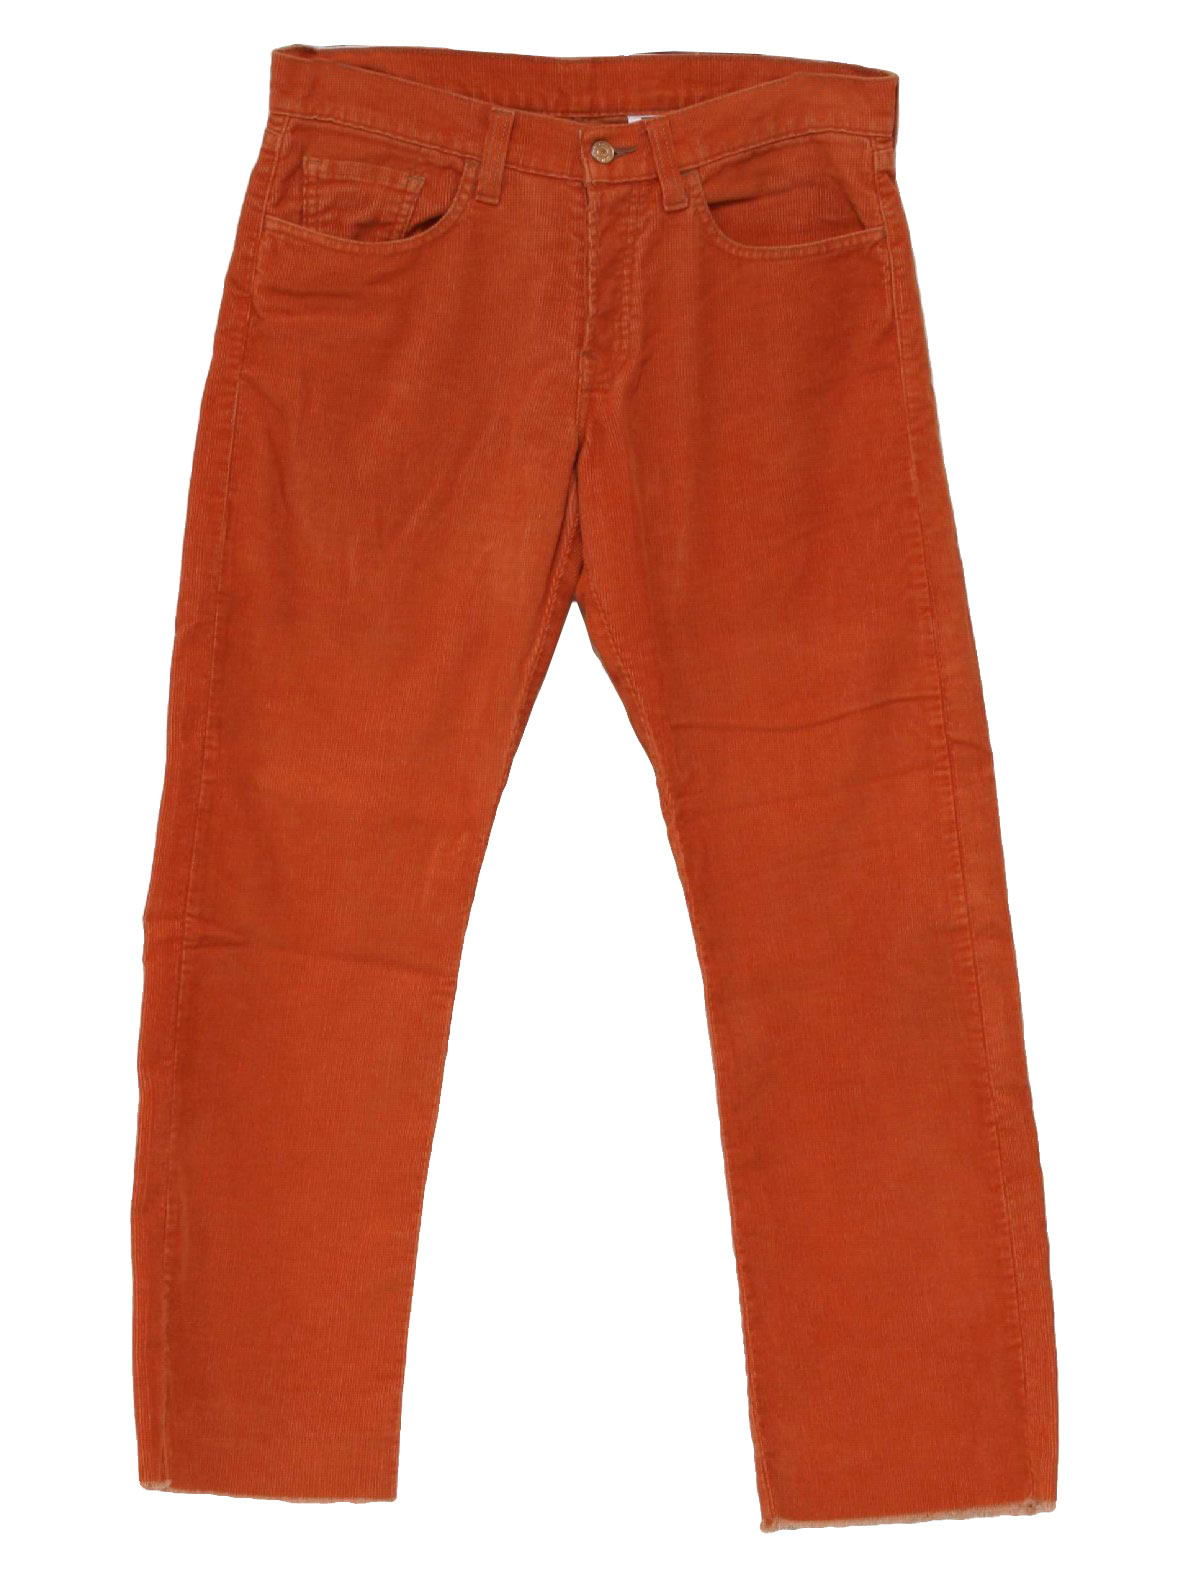 orange levi's jeans